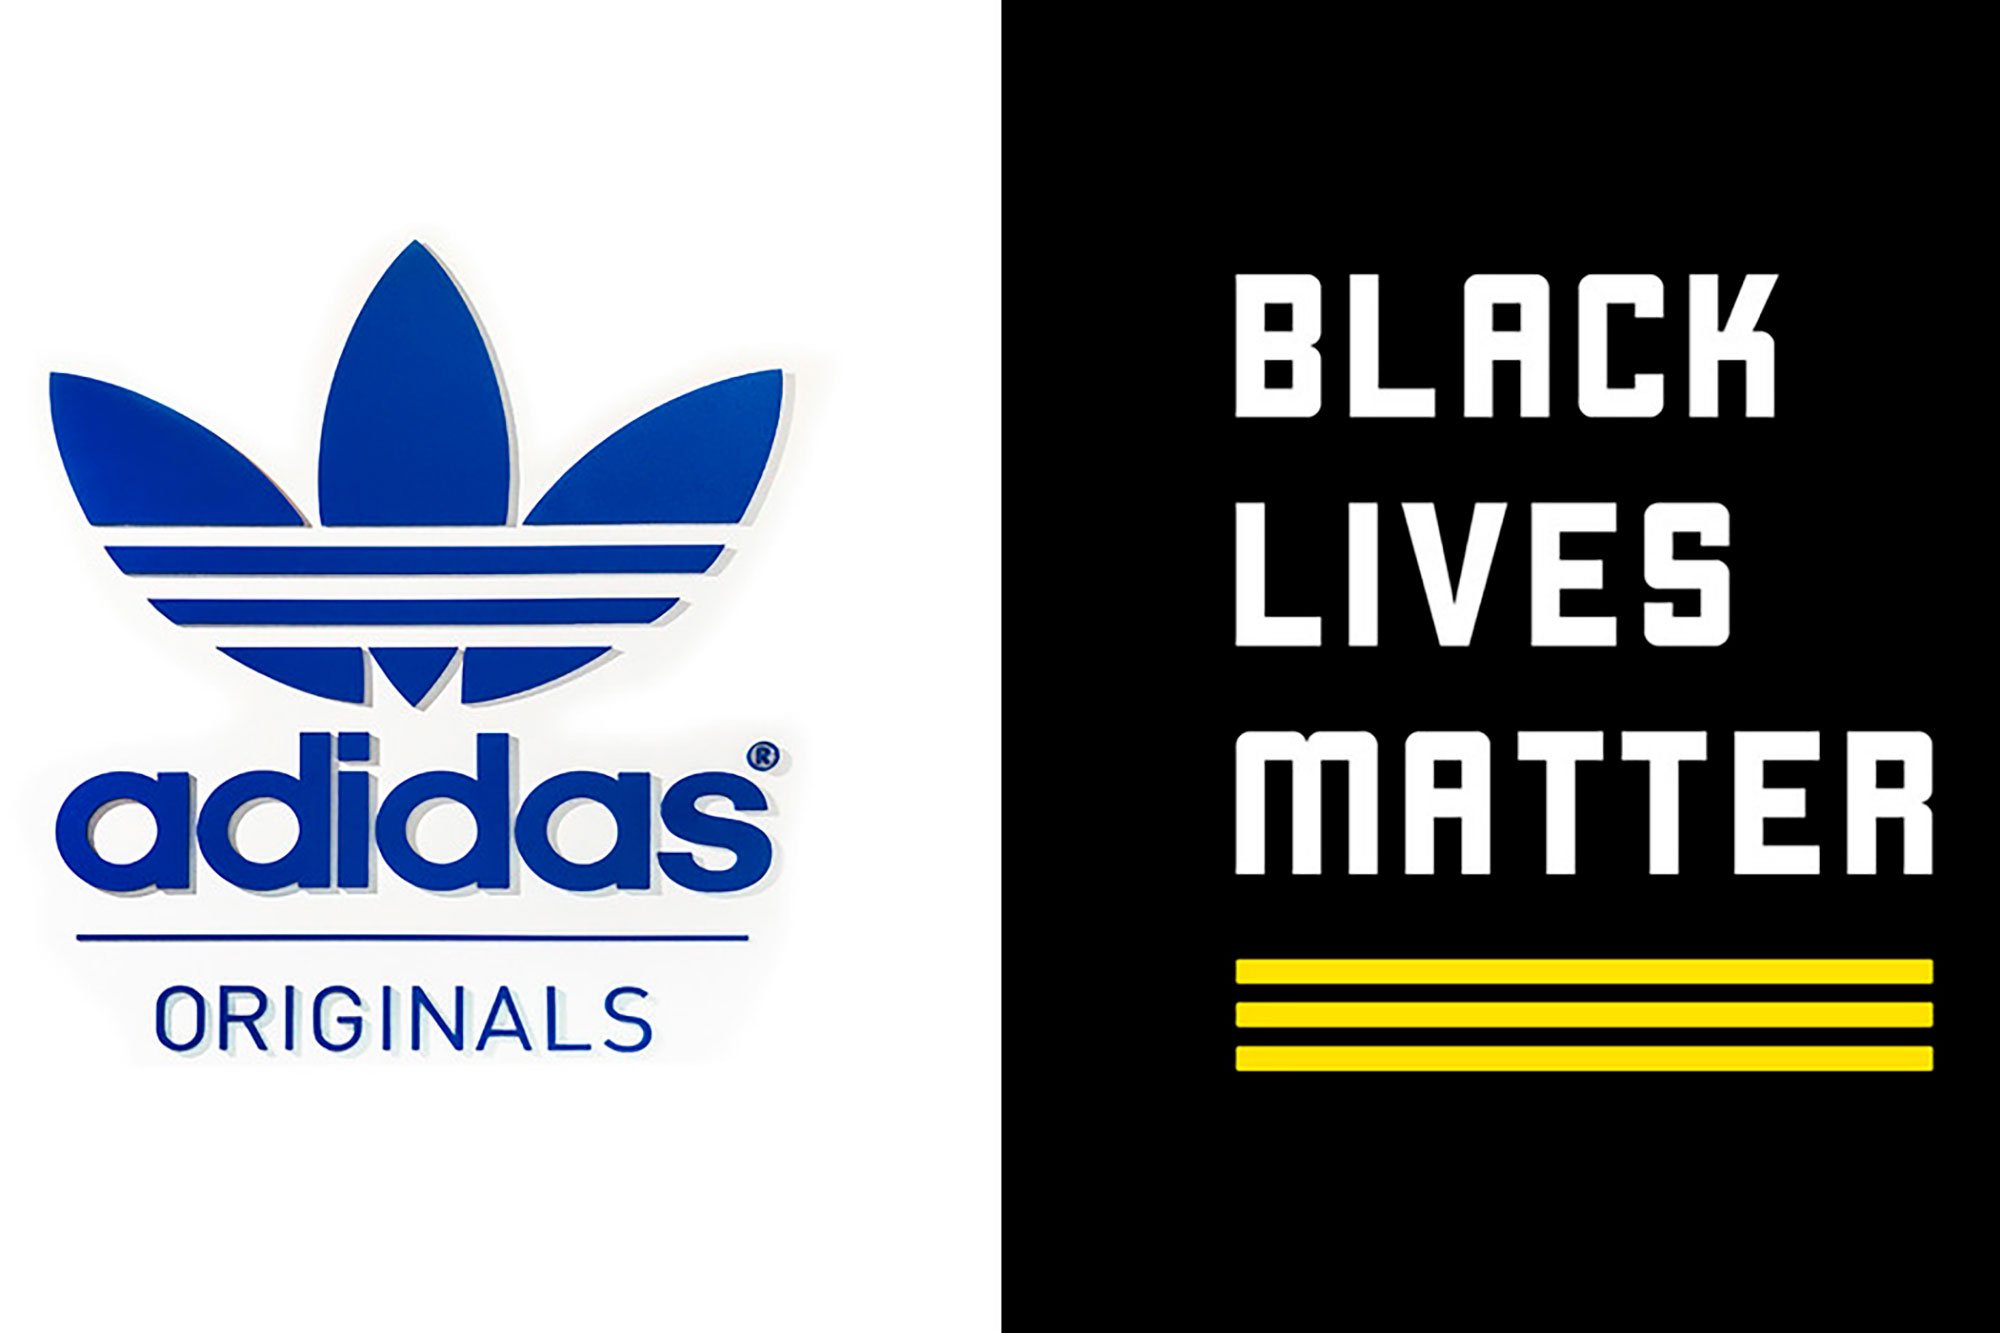 Adidas cree que el diseño de Black Lives Matter se confunde con su logo y luego se retracta